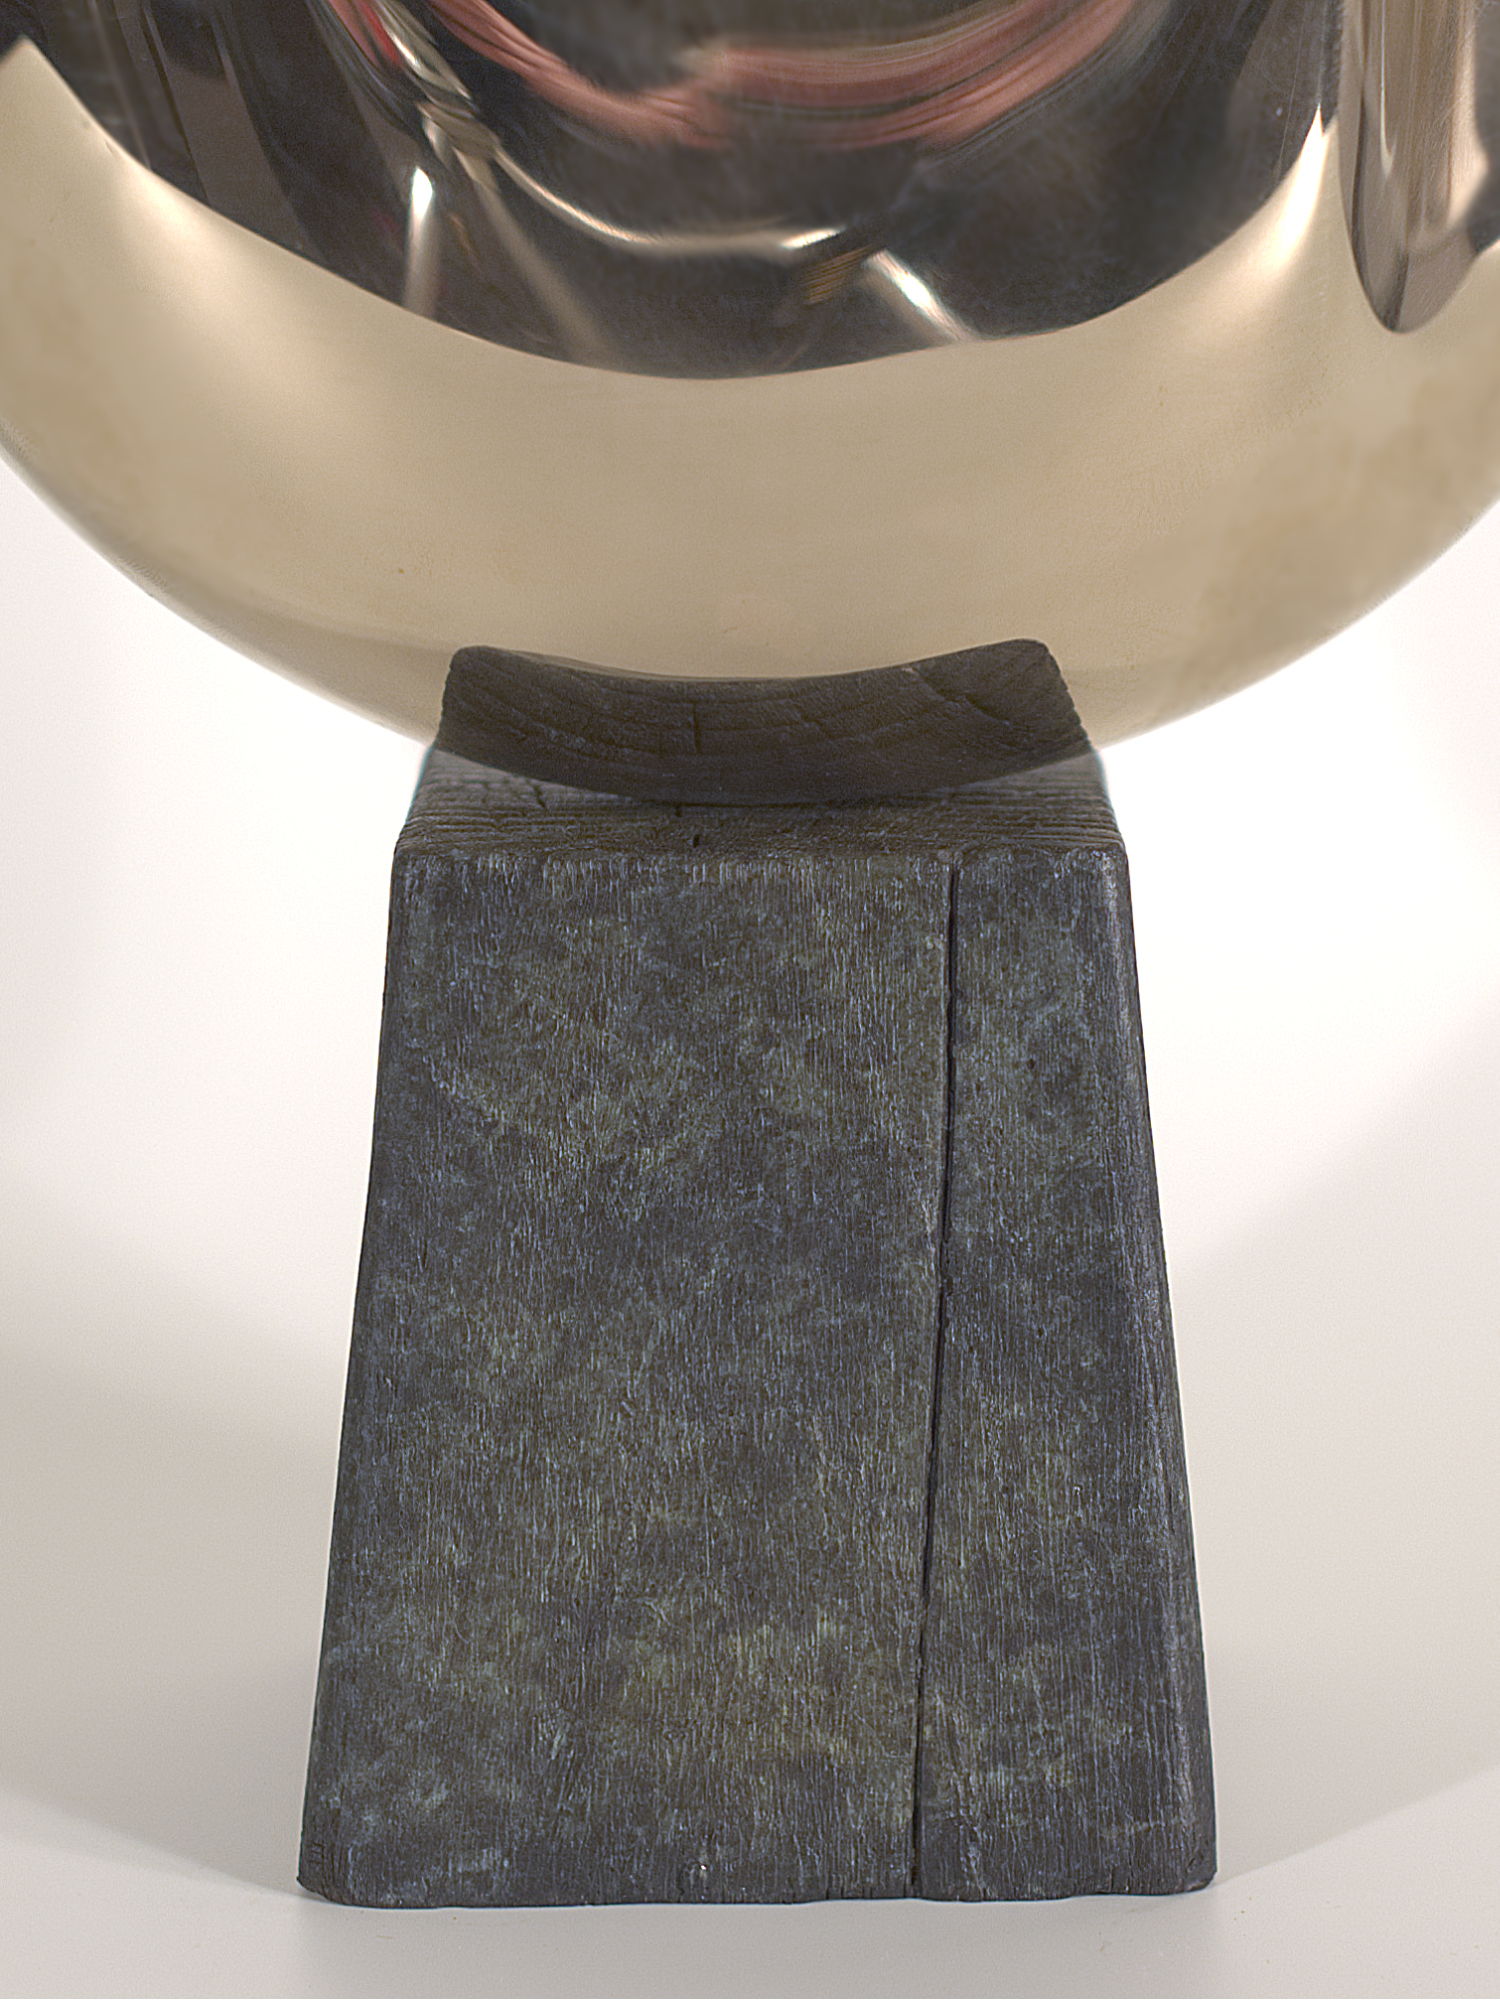 She #1. Modern bronze sculpture by Steve Howlett. 2013. Detail of base.